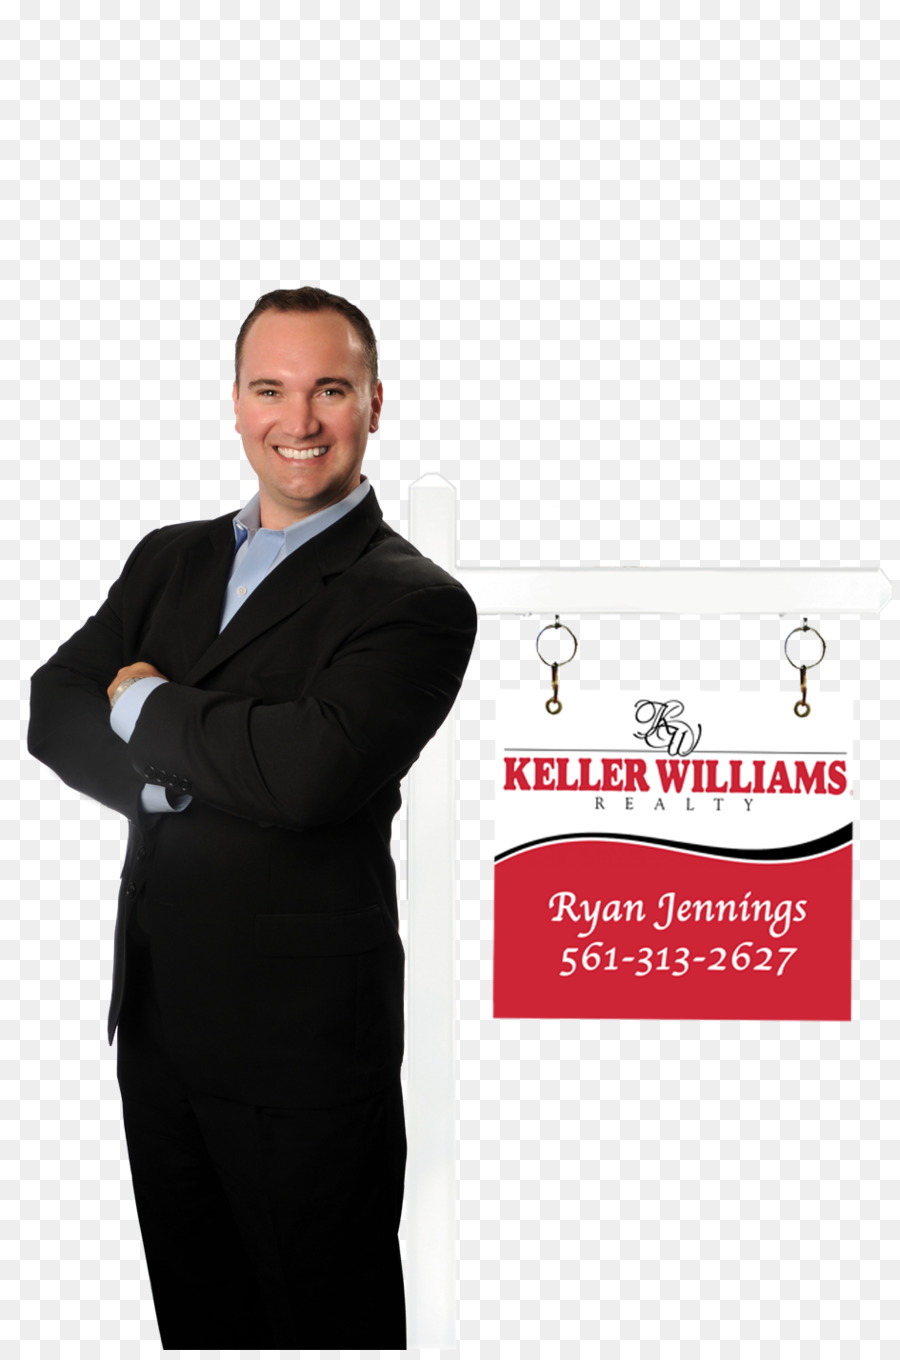 Keller Williams Realty Formal Wear